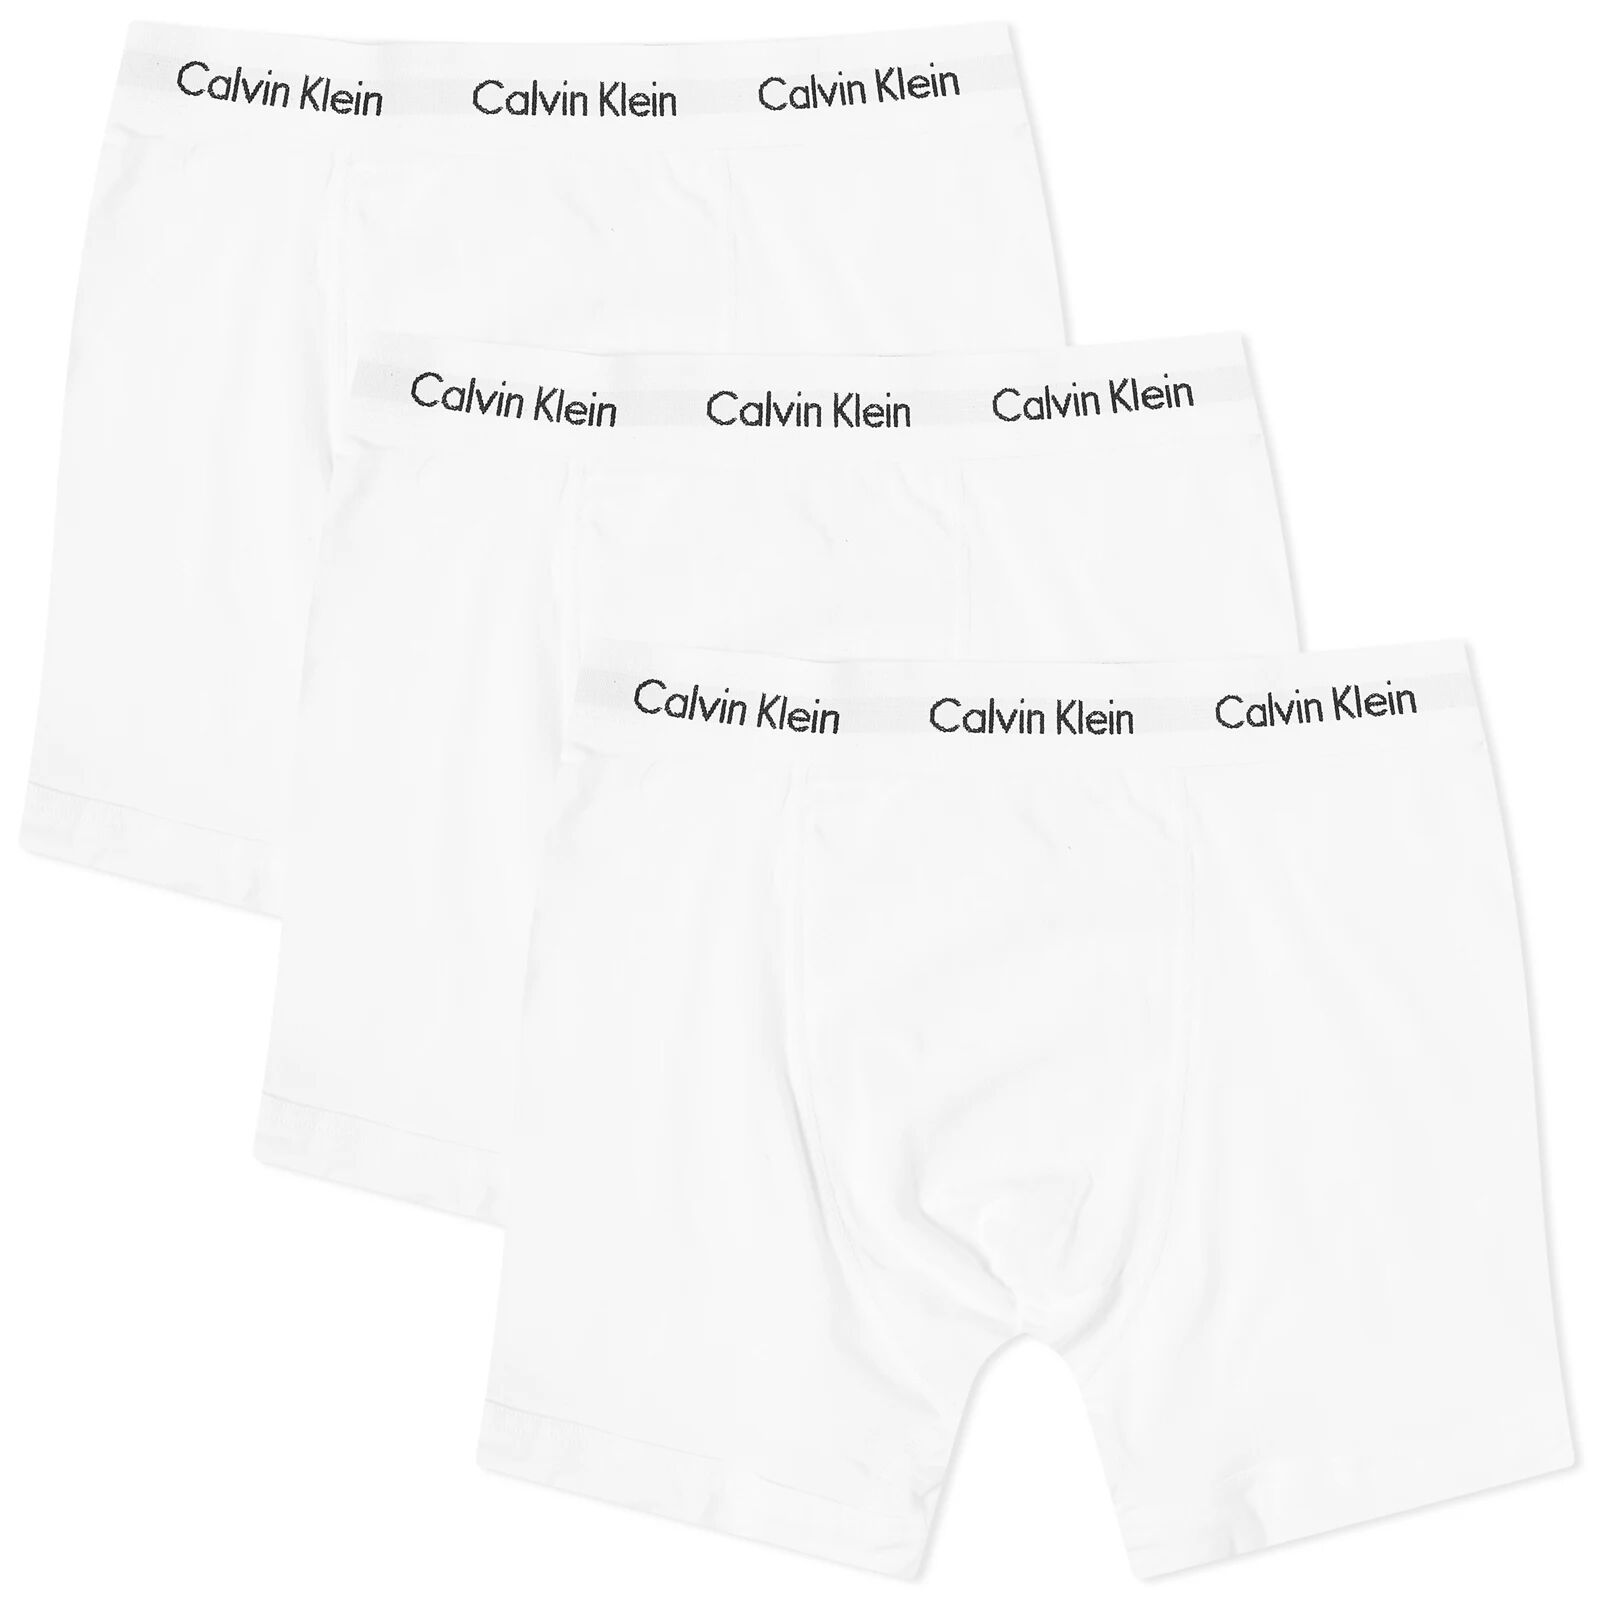 Calvin Klein Men's CK Underwear Boxer Brief - 3 Pack in White, Size X-Large